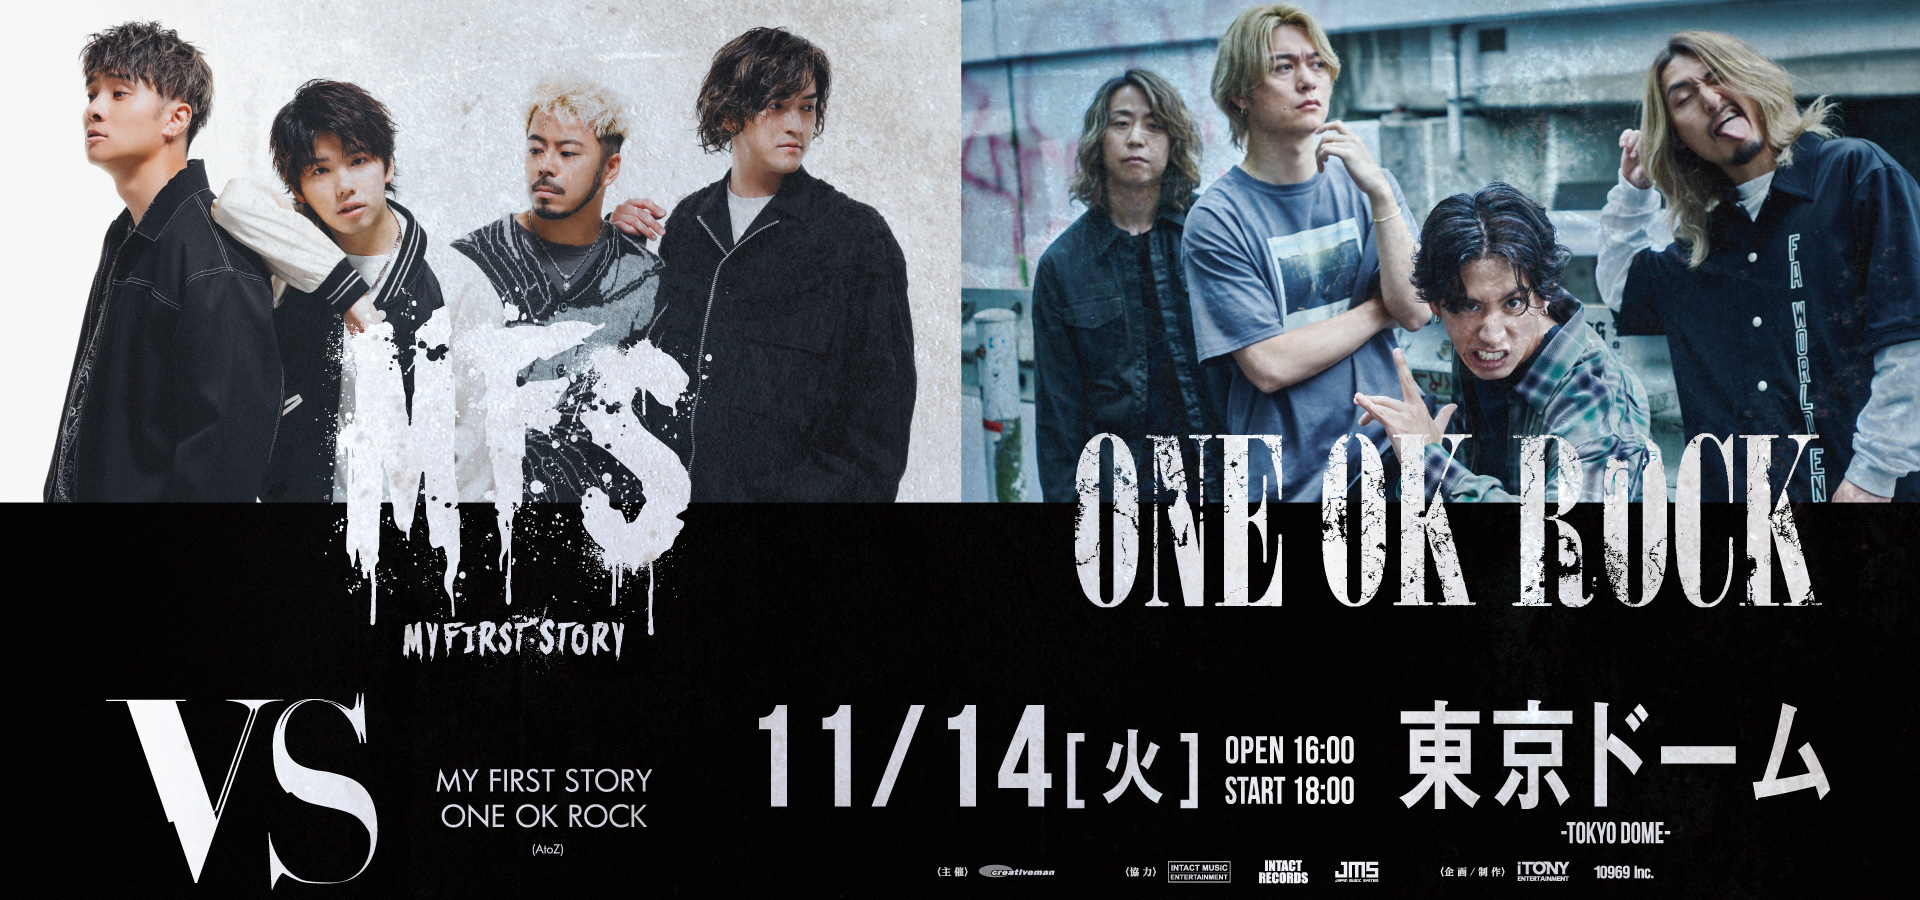 VS 【MY FIRST STORY / ONE OK ROCK (AtoZ)】 | iTONY ENTERTAINMENT 